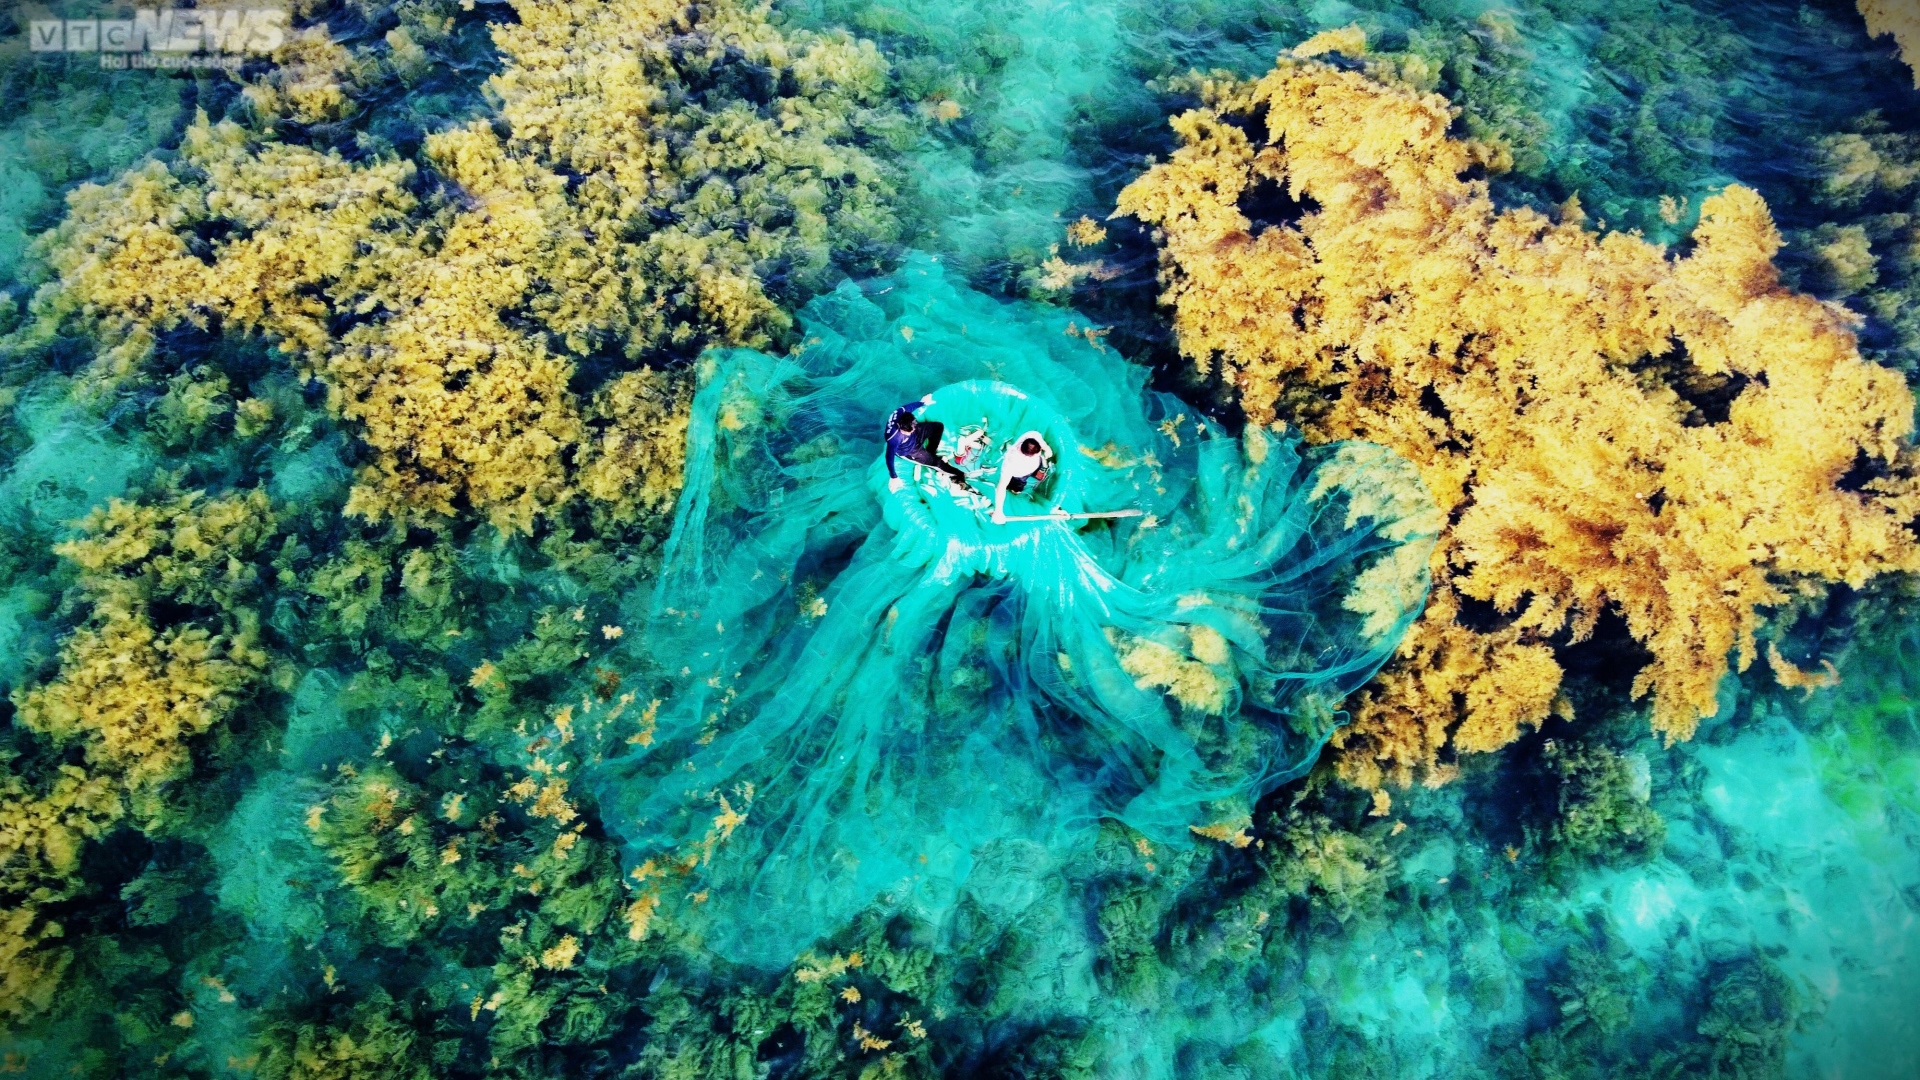 Ngất ngây 'cánh đồng vàng' dưới biển xanh trong ở đảo Hòn Khô, Bình Định - Ảnh 5.